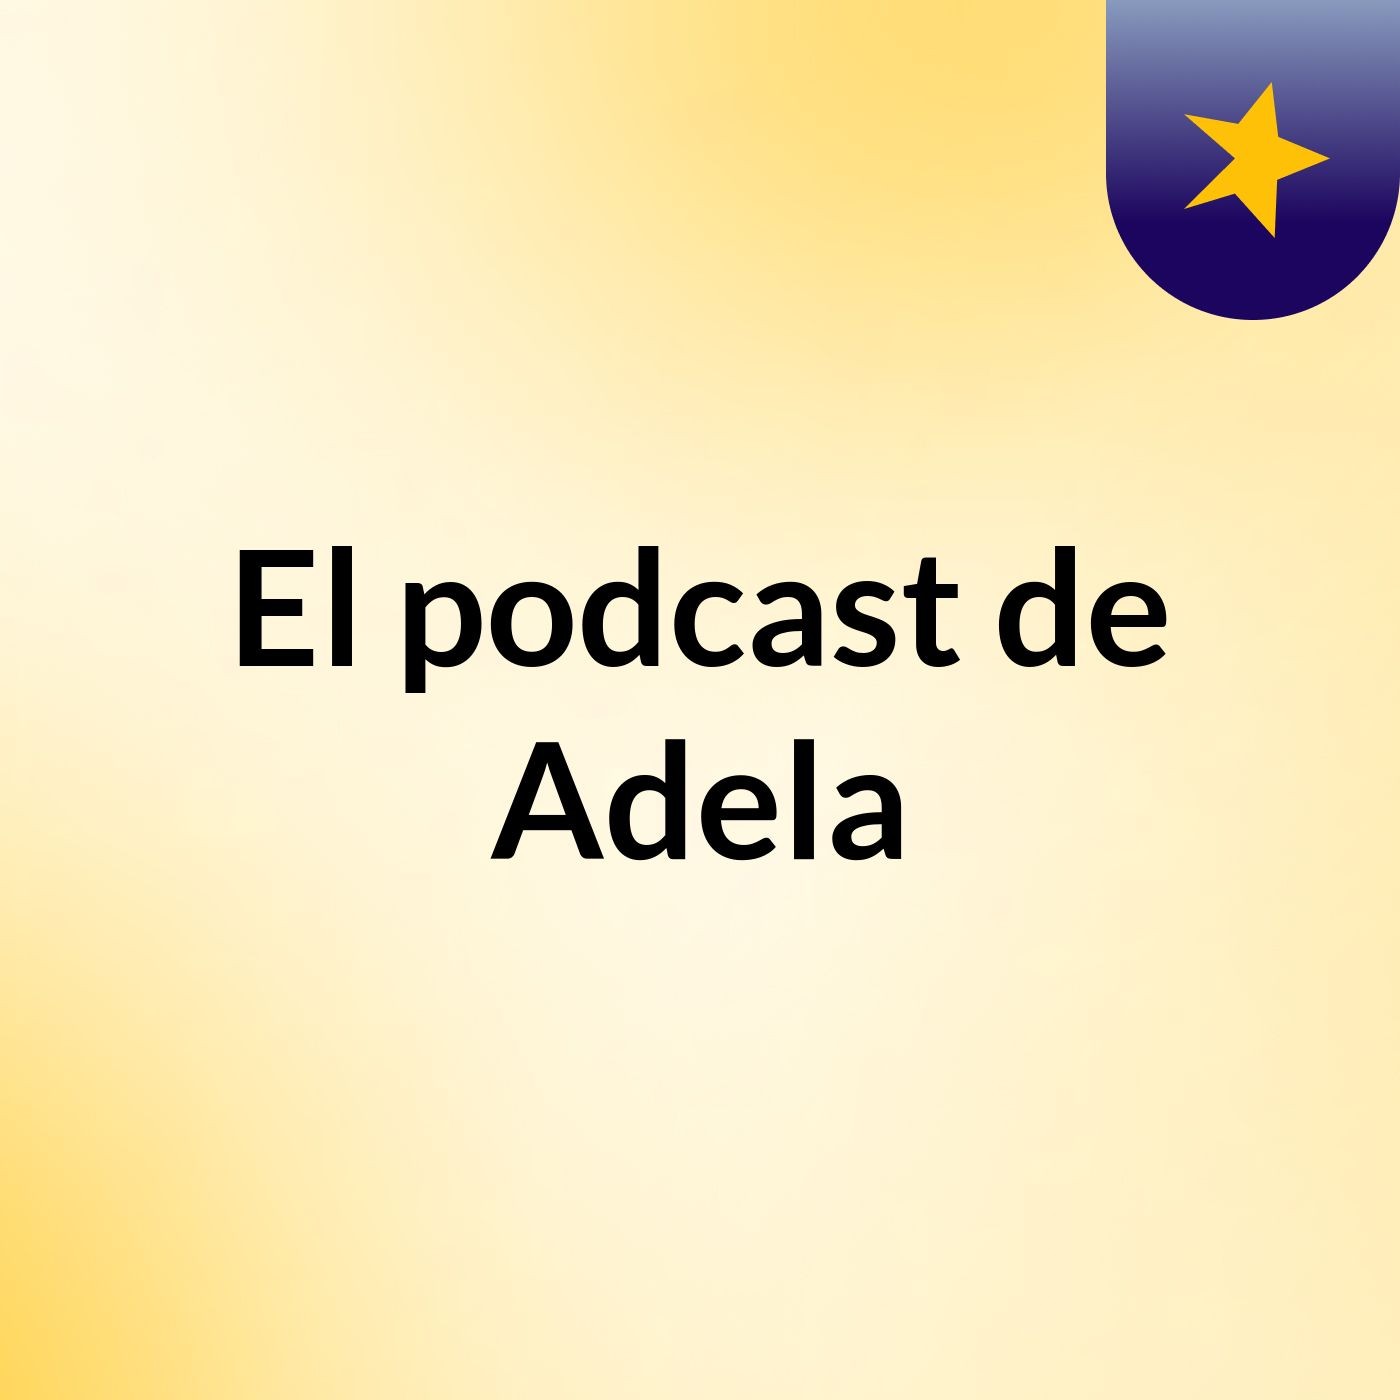 El podcast de Adela